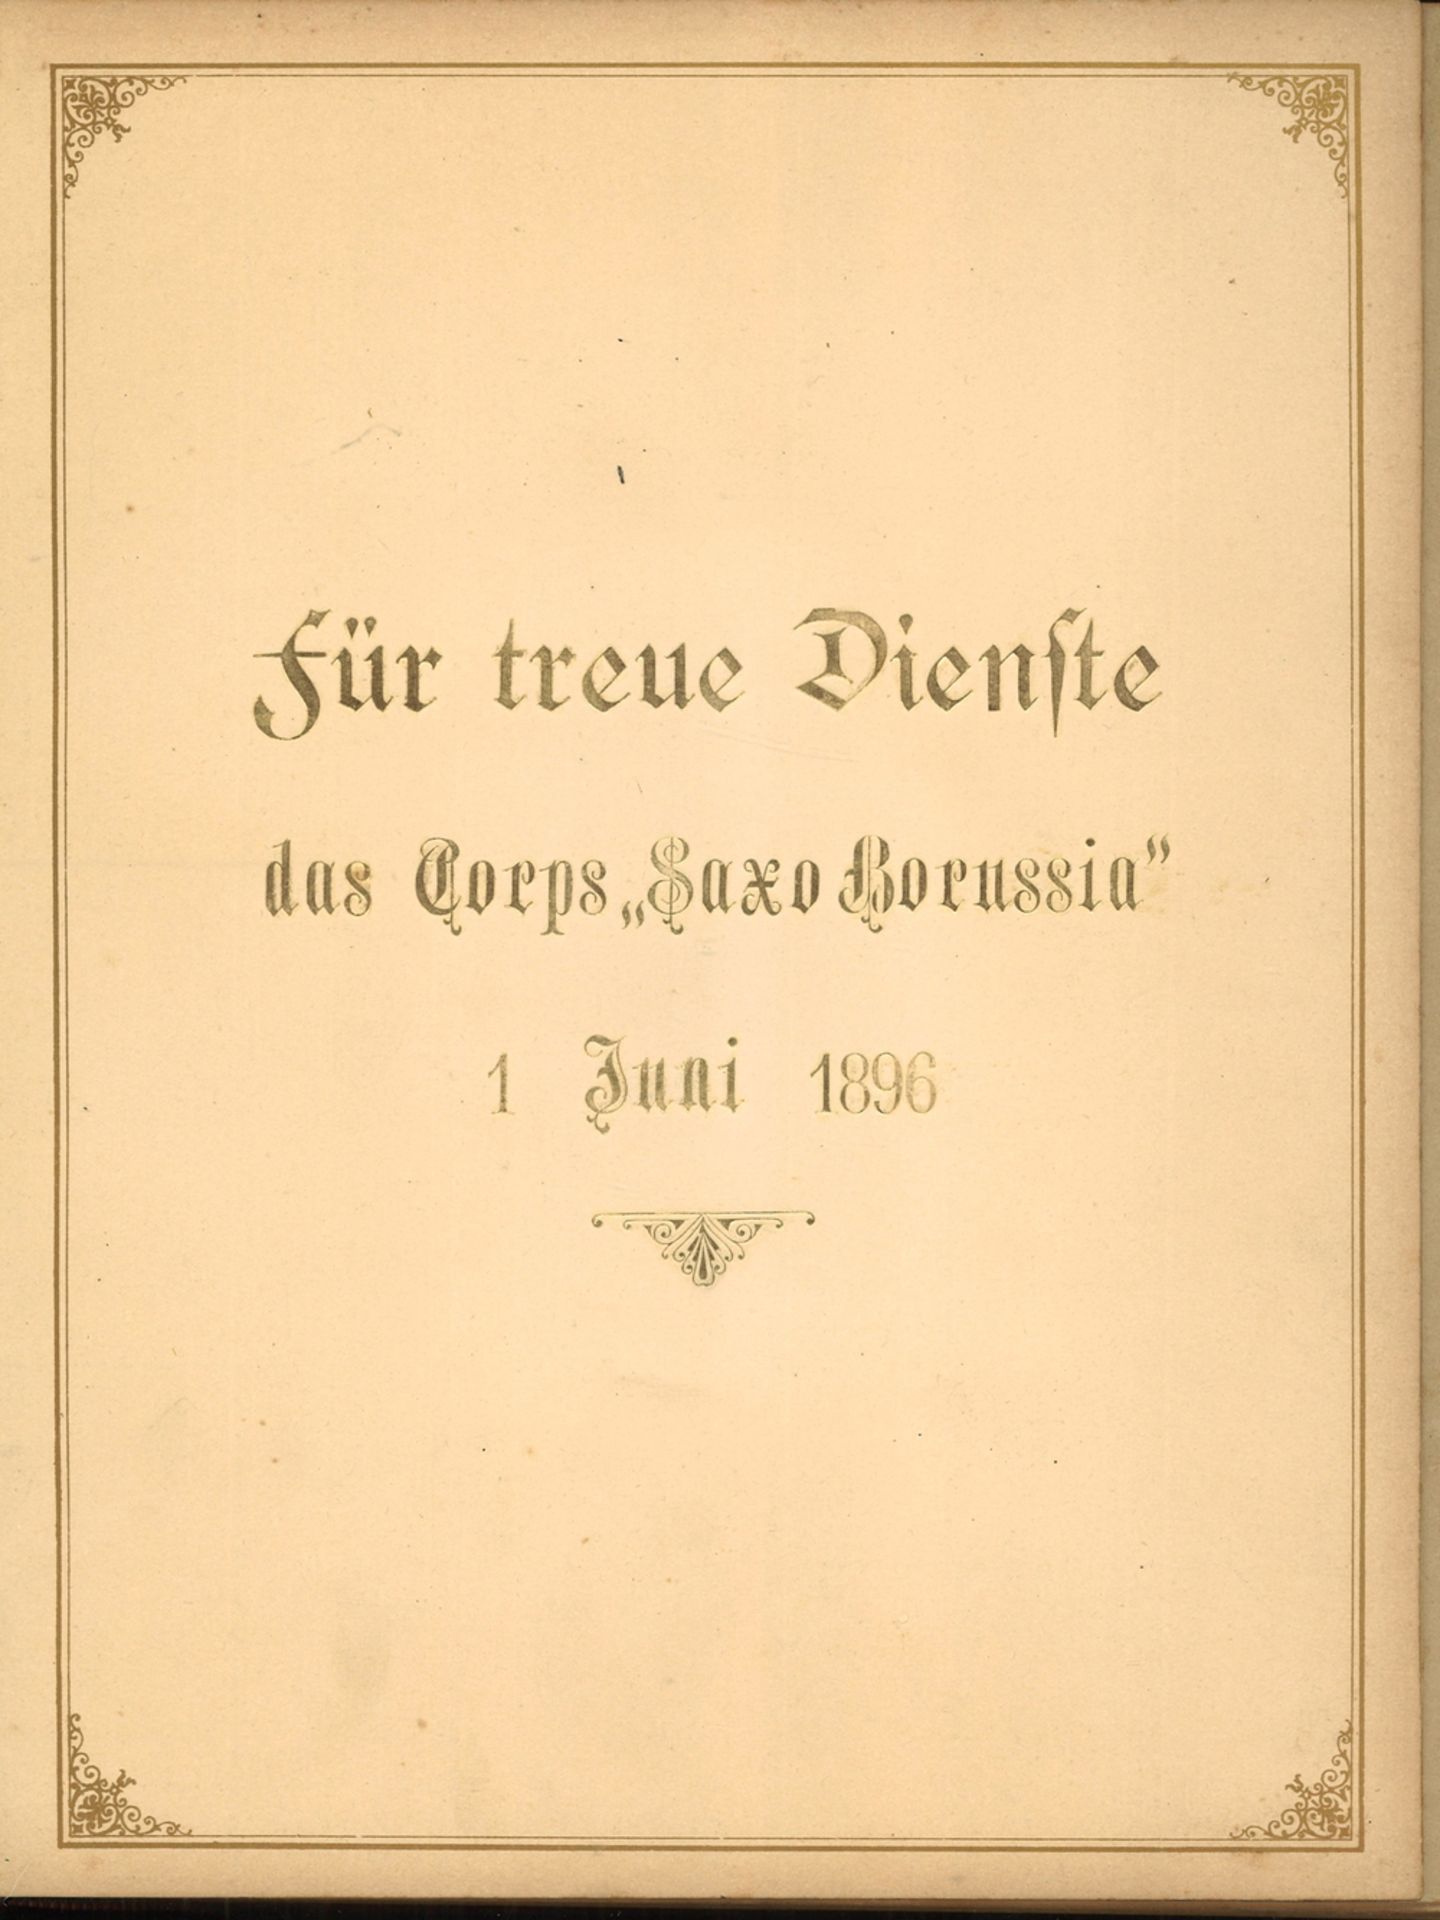 dickes Fotoalbum "für treue Dienste das Corps "Saxo Borussia" 1 Juni 1896" insgesamt 71 Portrait - Image 2 of 5